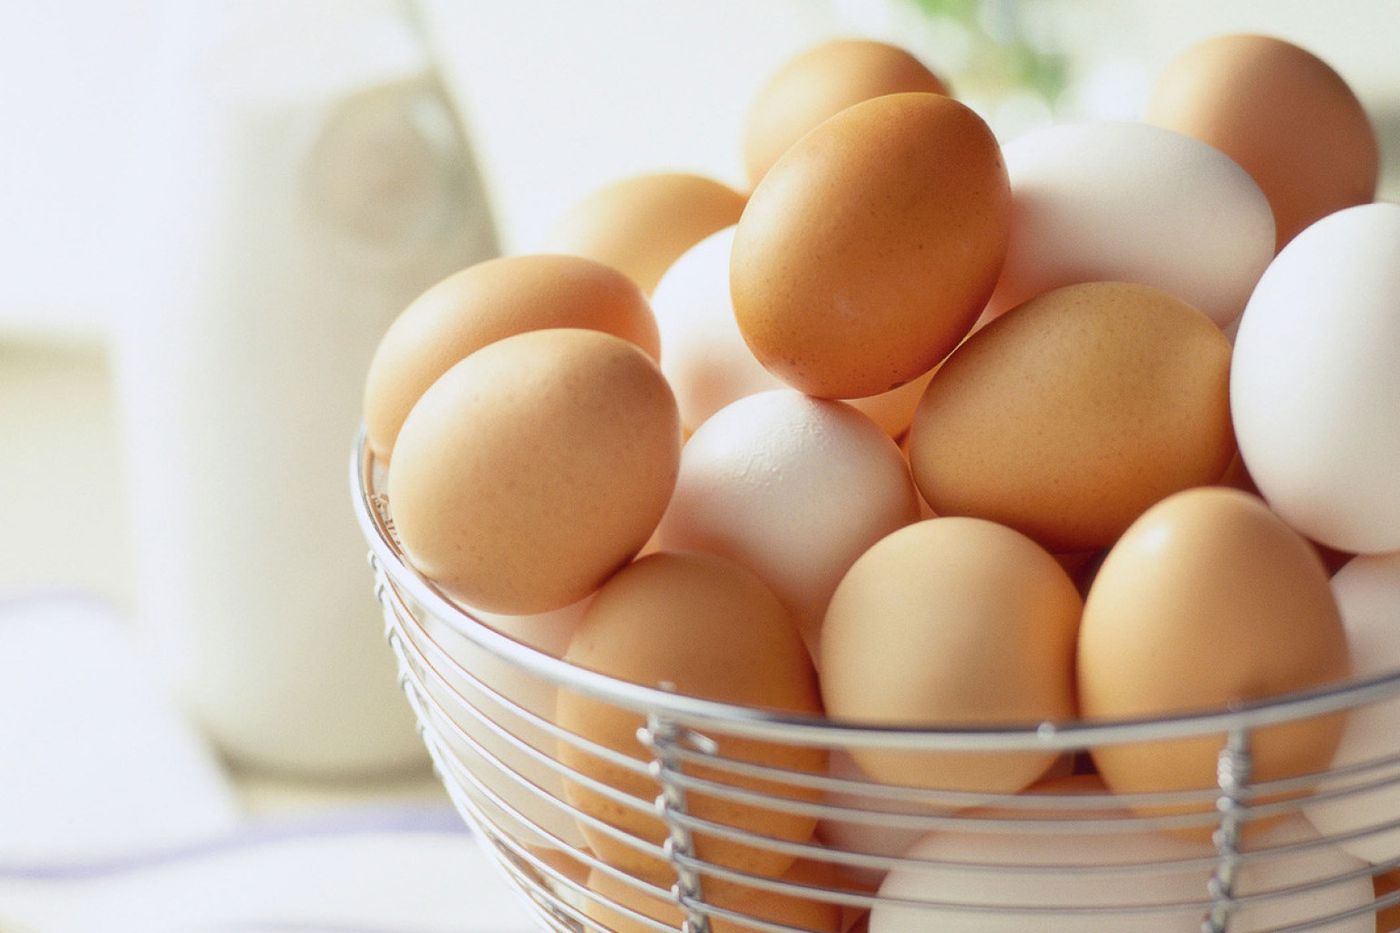 Theo Bộ Nông nghiệp Hoa Kỳ (USDA) thì trong 1 quả trứng gà có chứa từ 54 - 90 kcal